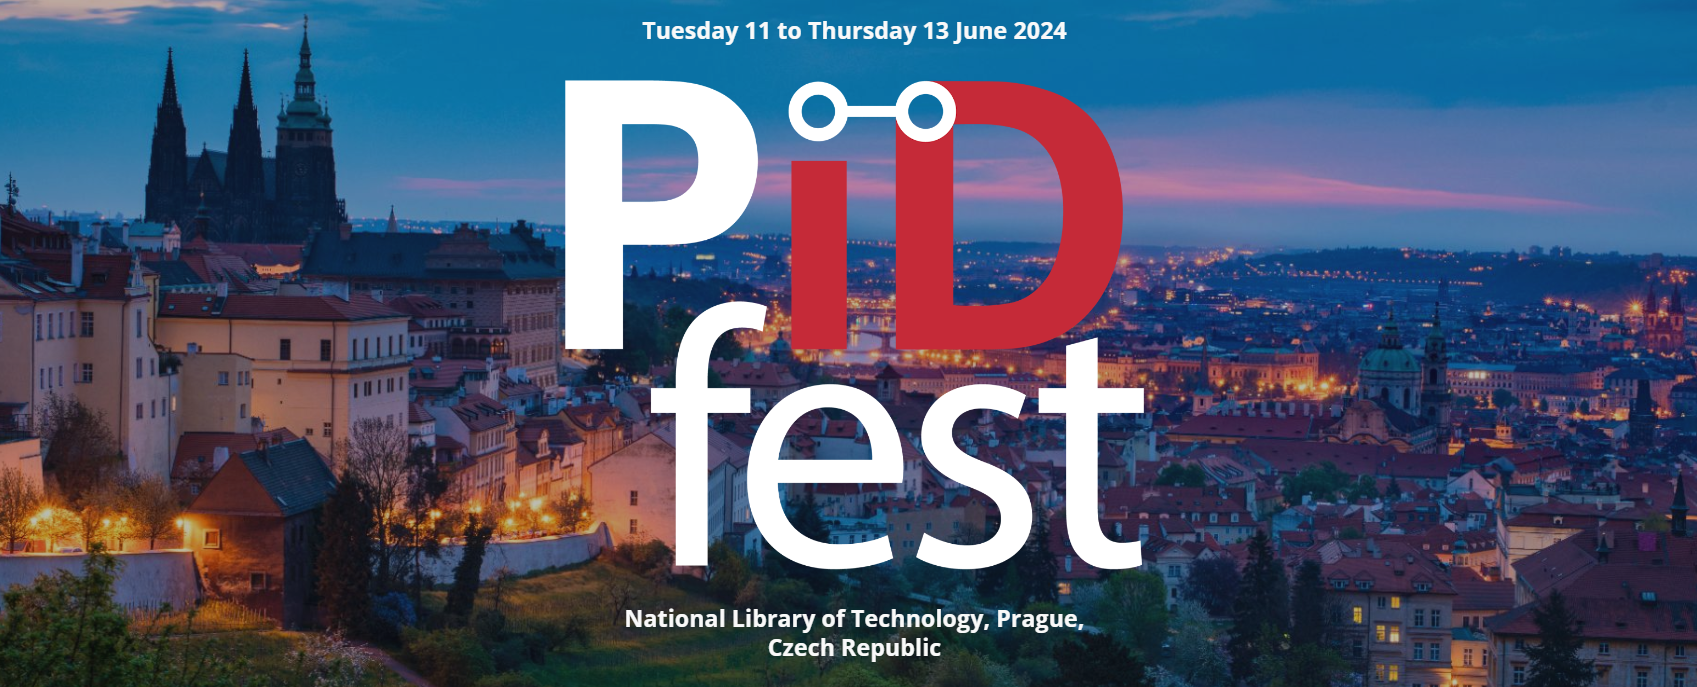 PIDfest2024